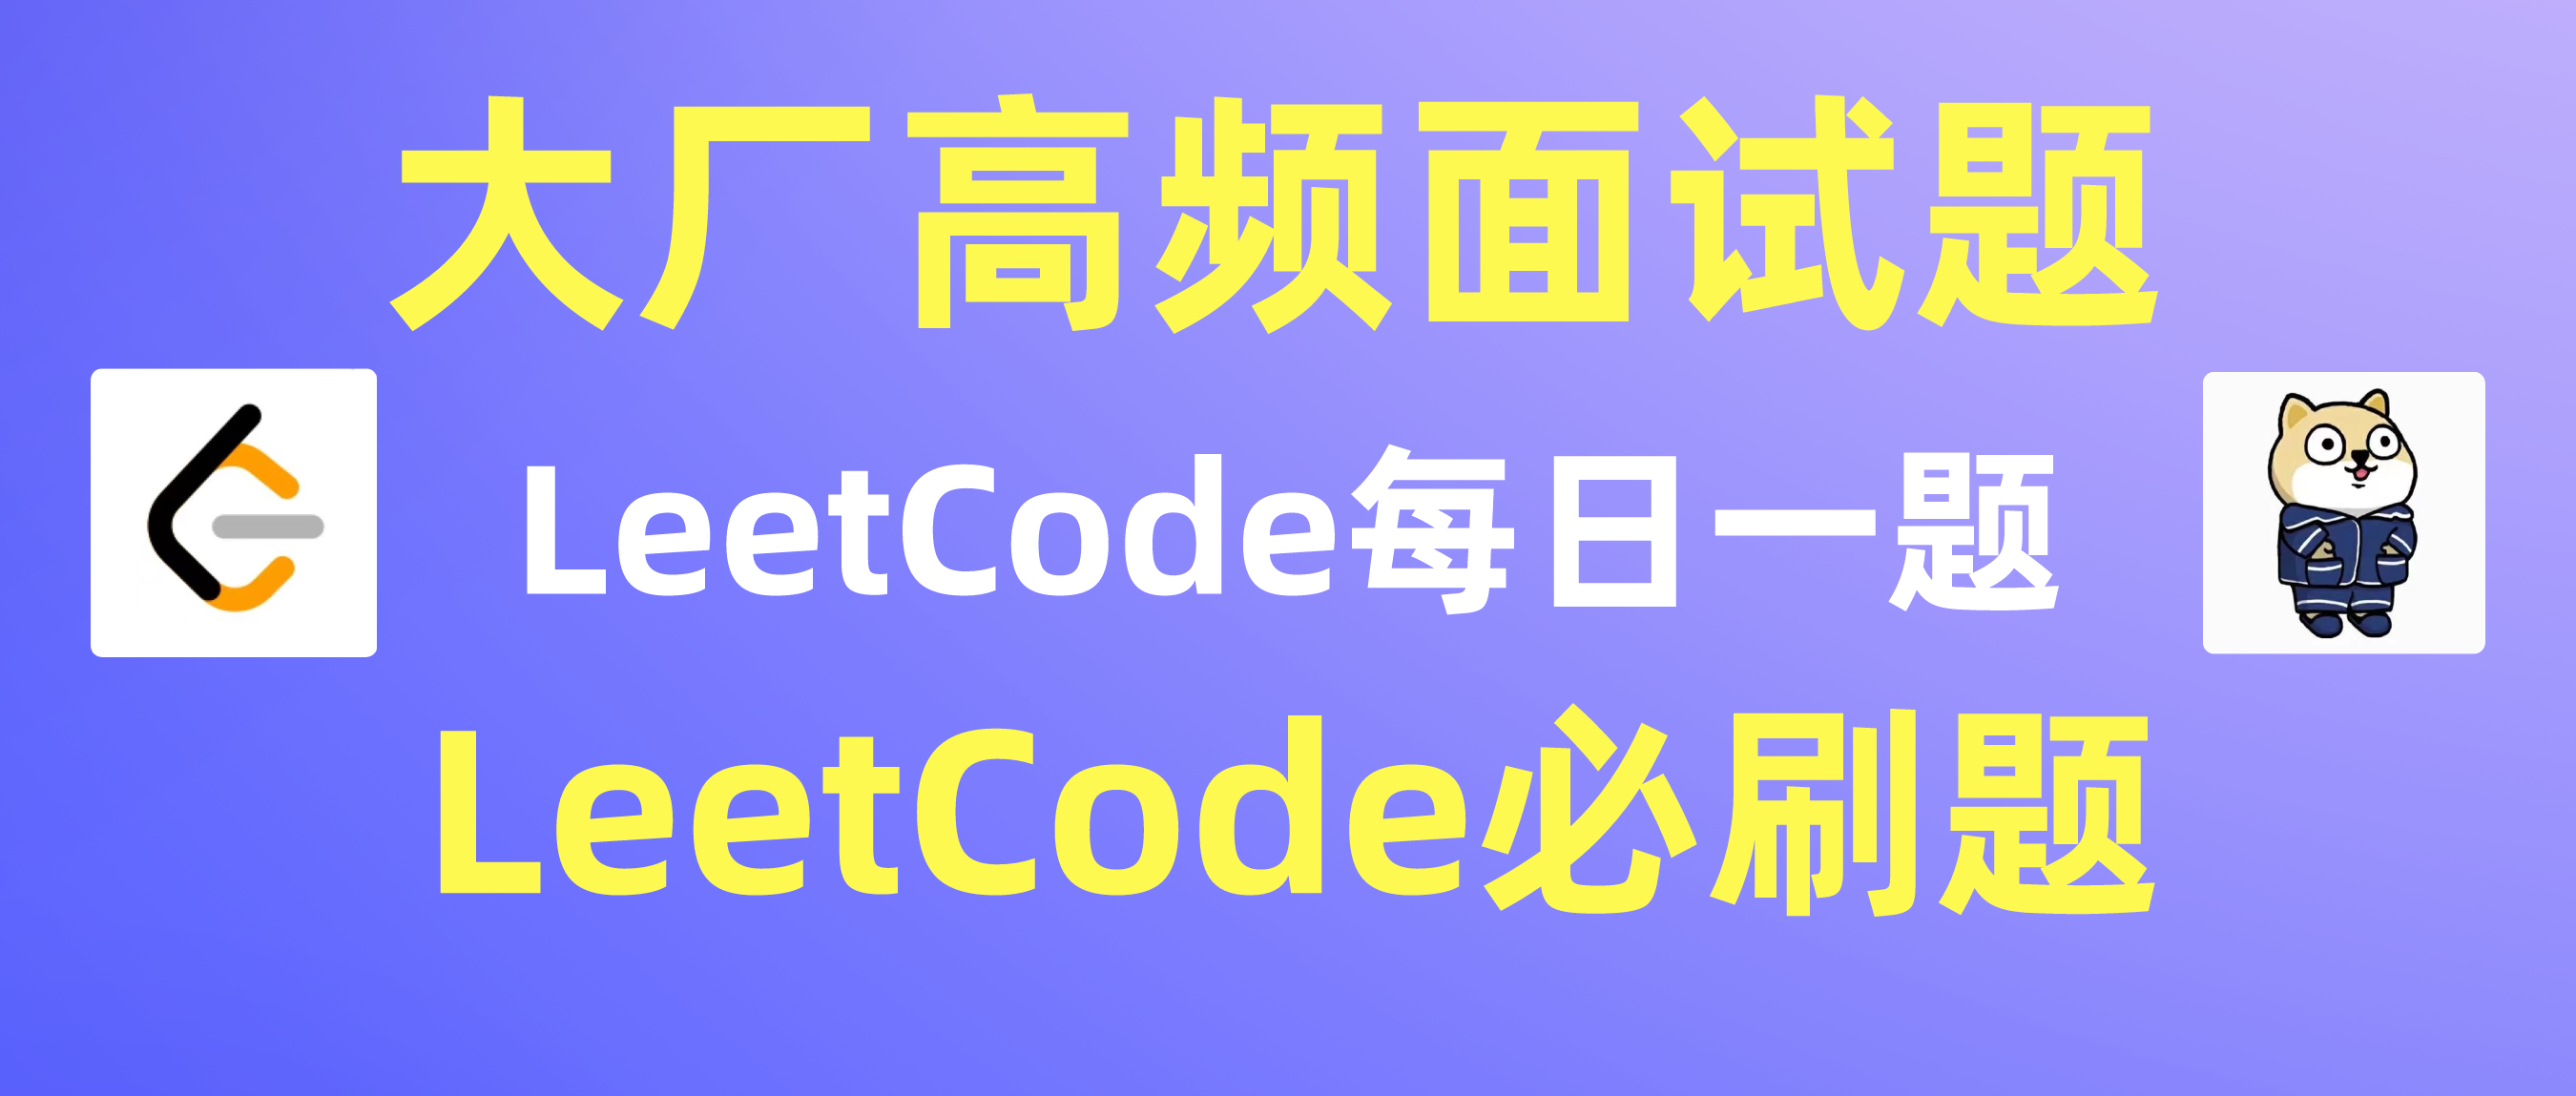 【LeetCode每日一题 Day 4】4. 寻找两个正序数组的中位数